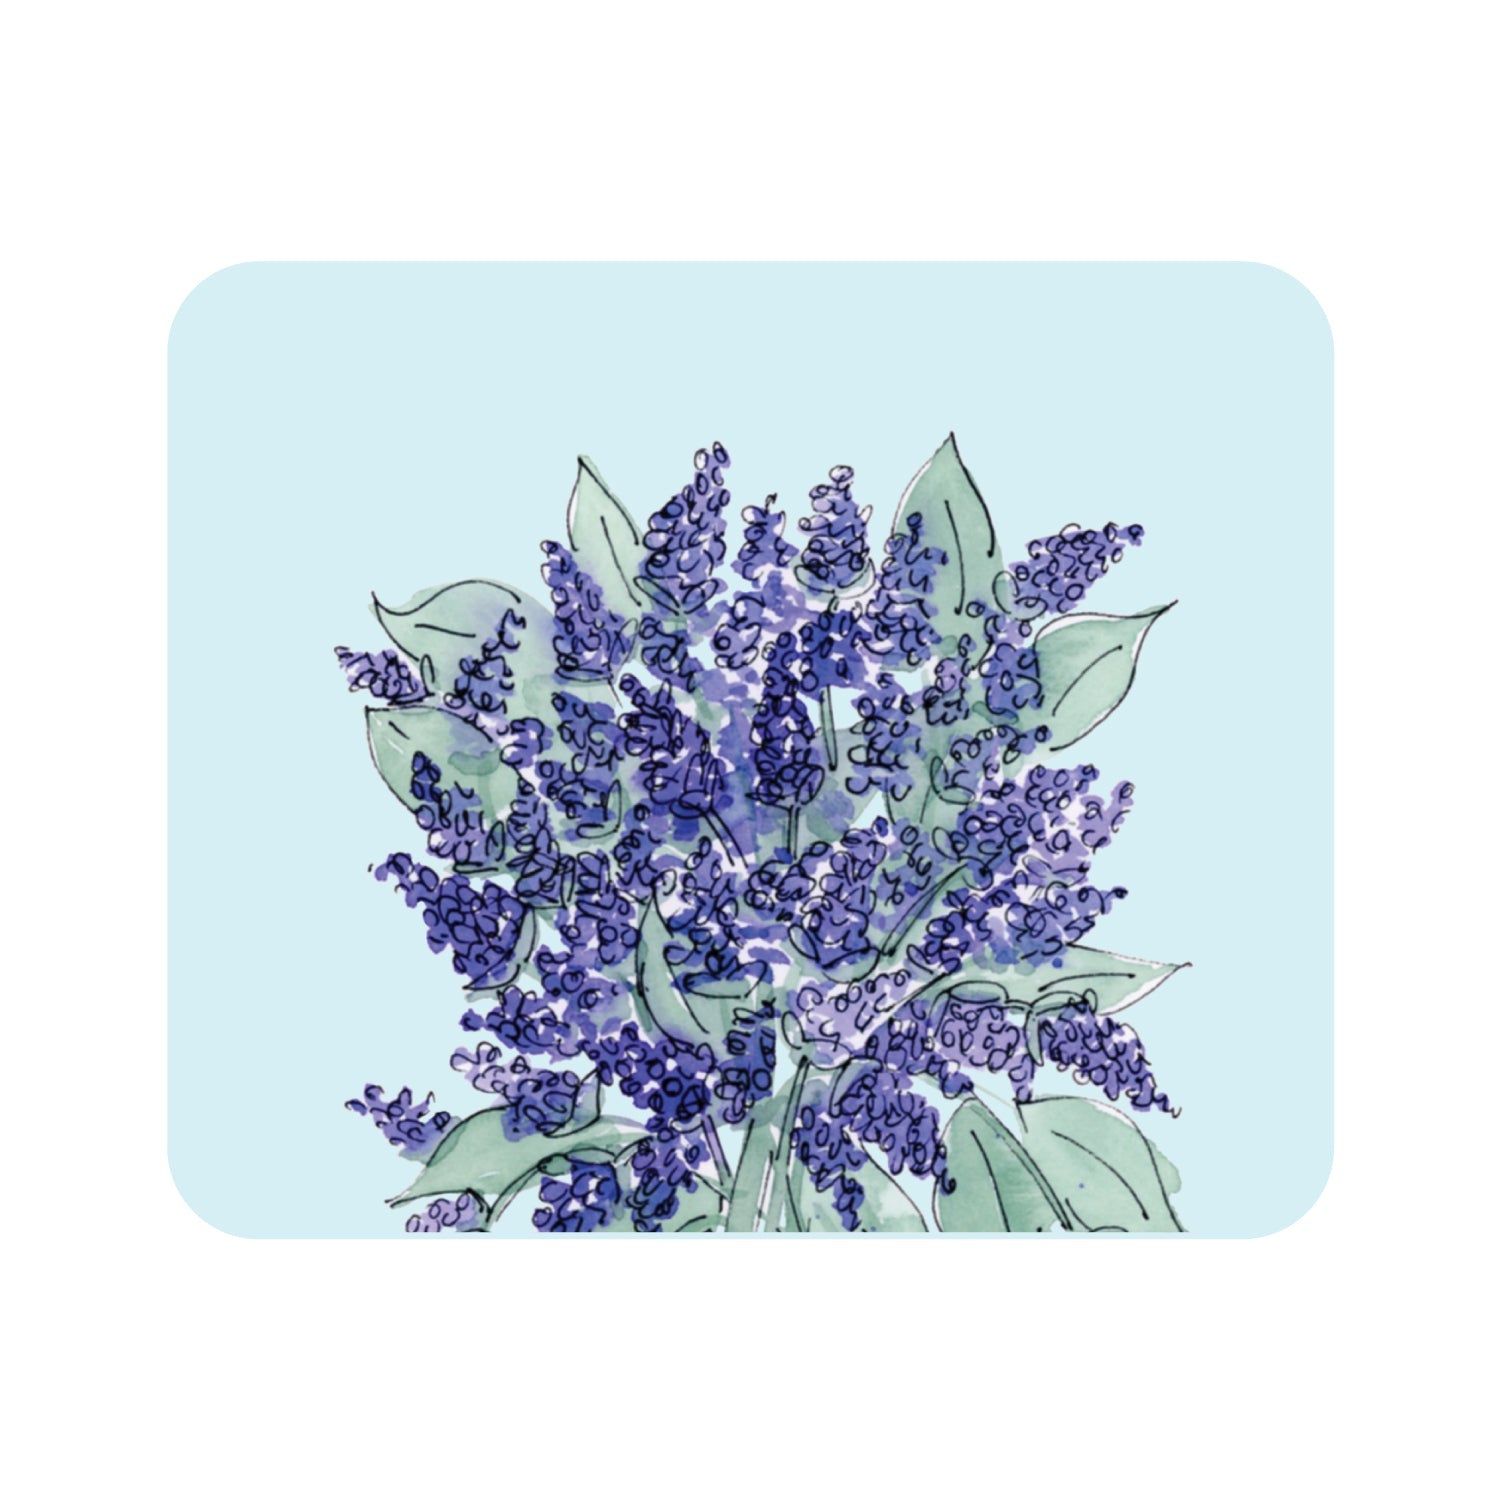 OTM Essentials Light Blue Mouse Pad, Lavender Bouquet